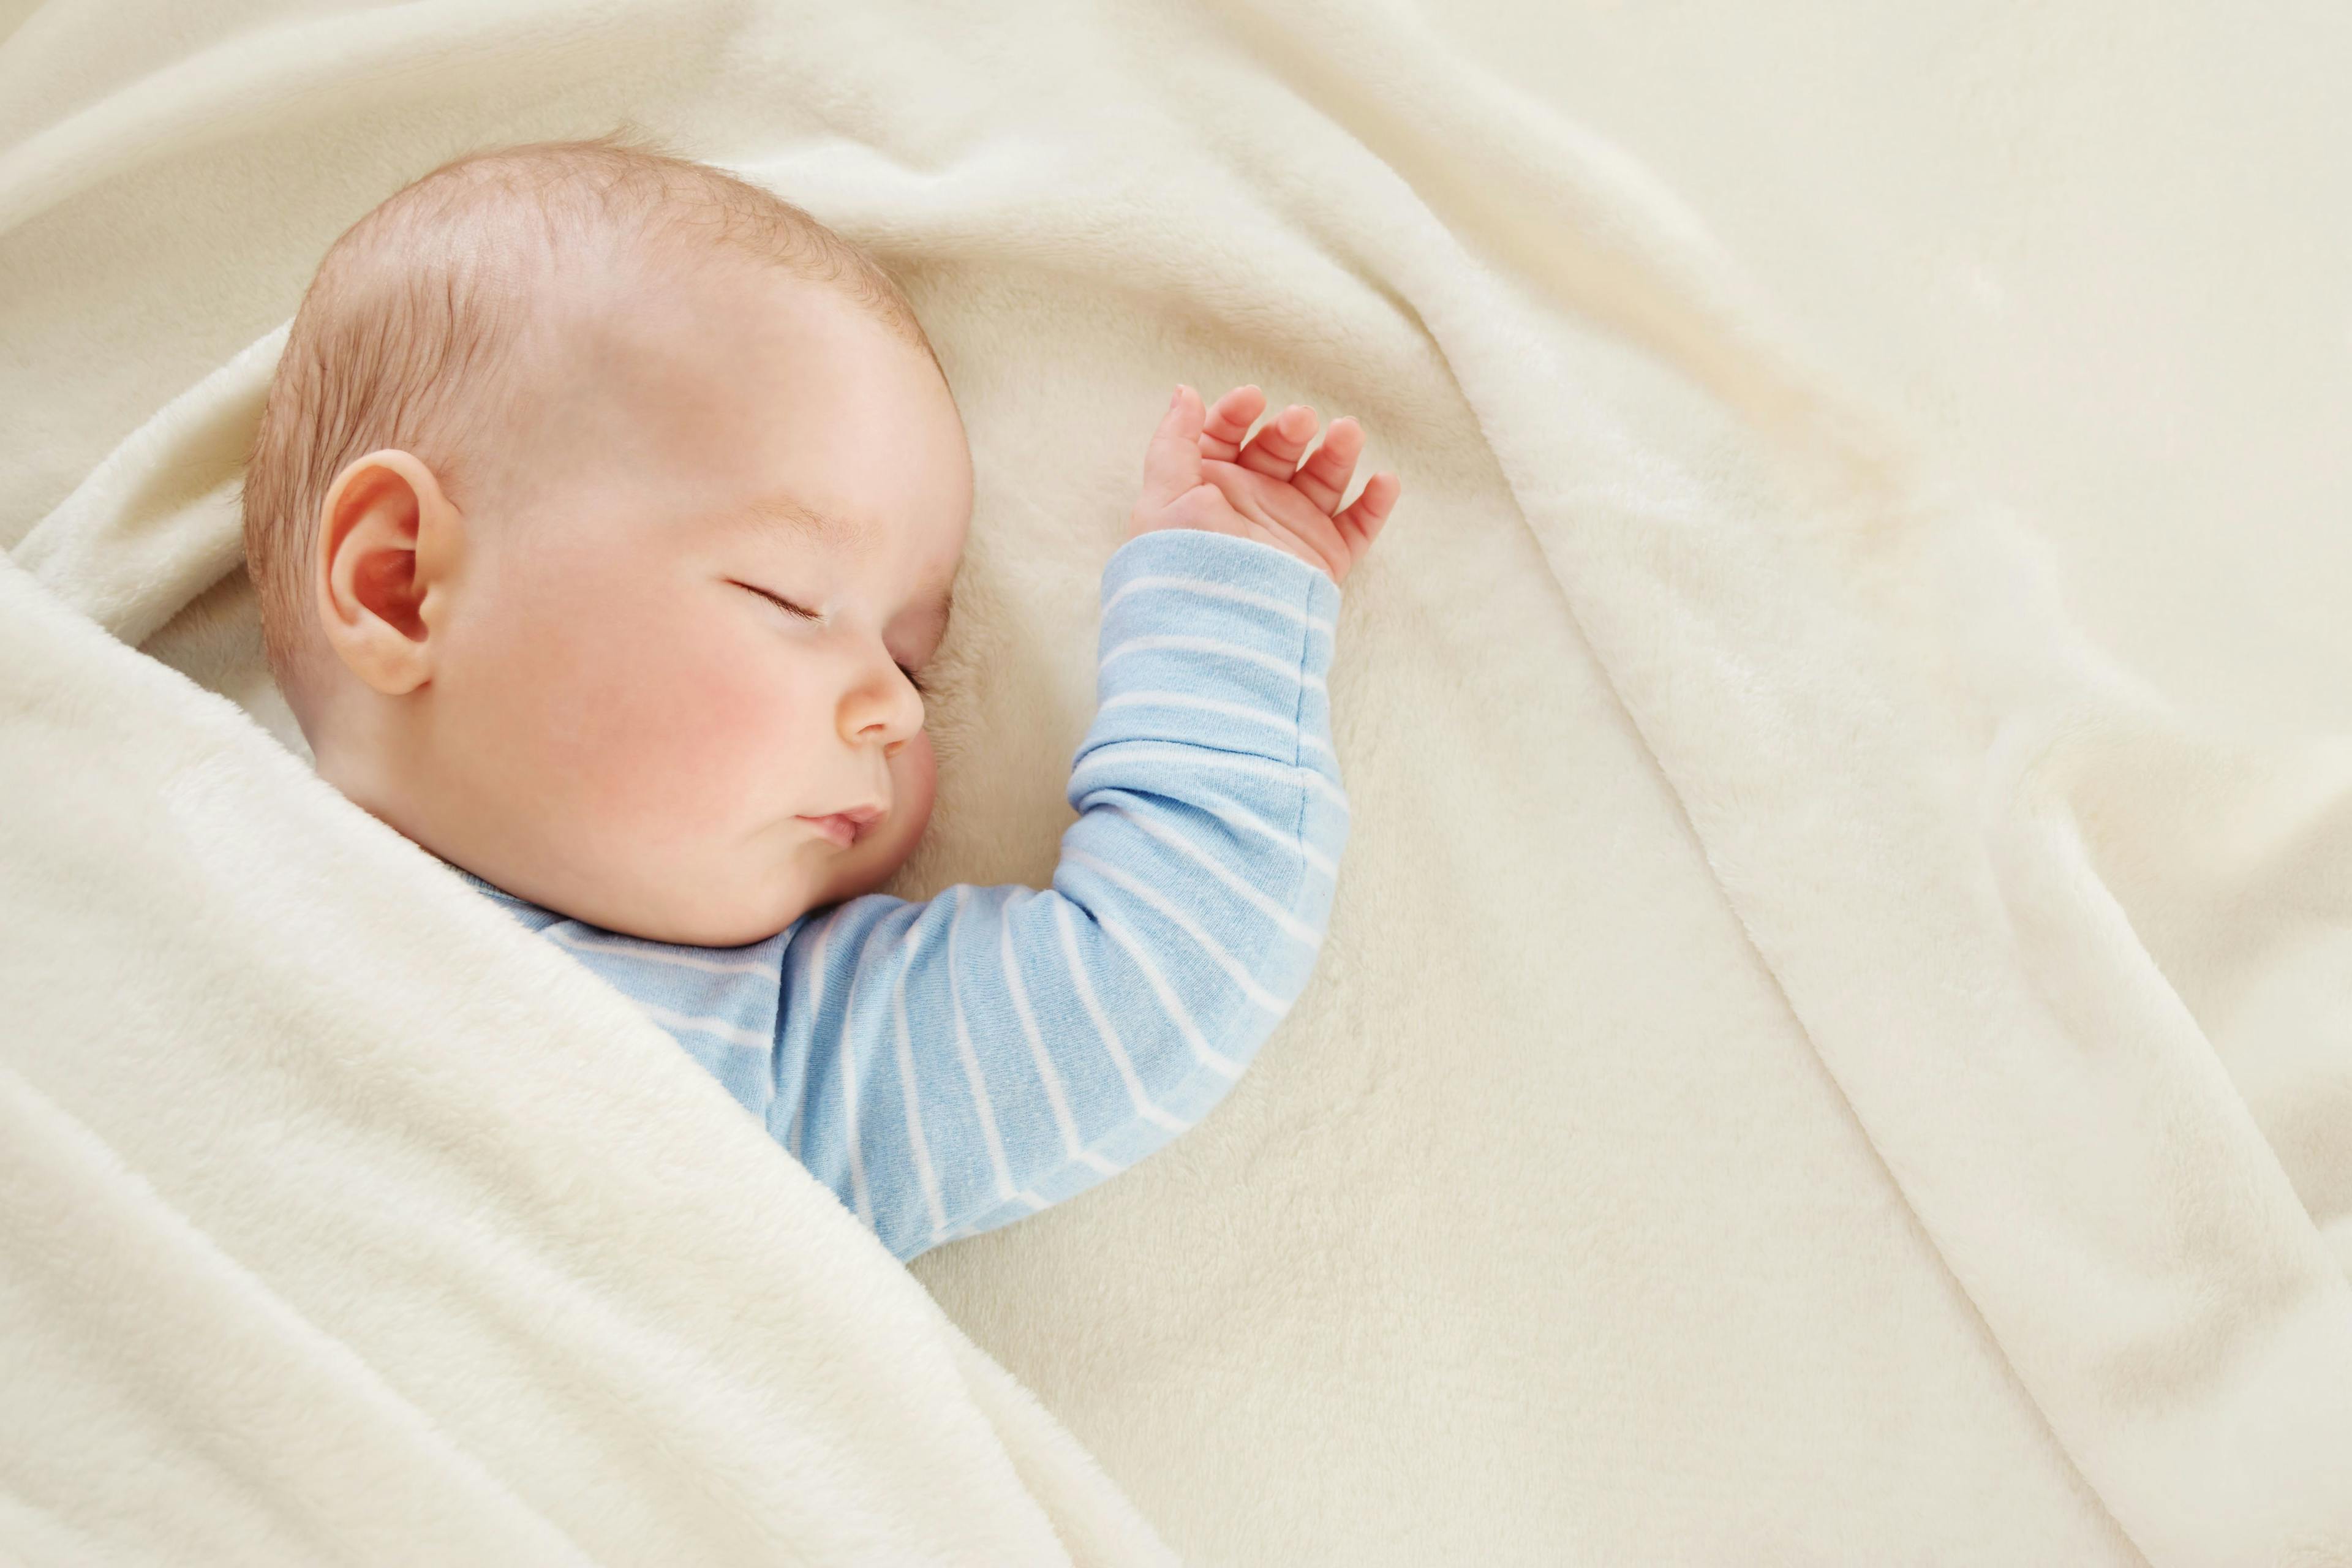 Study: Poor Sleep Linked with Weight Gain, Even Among Infants